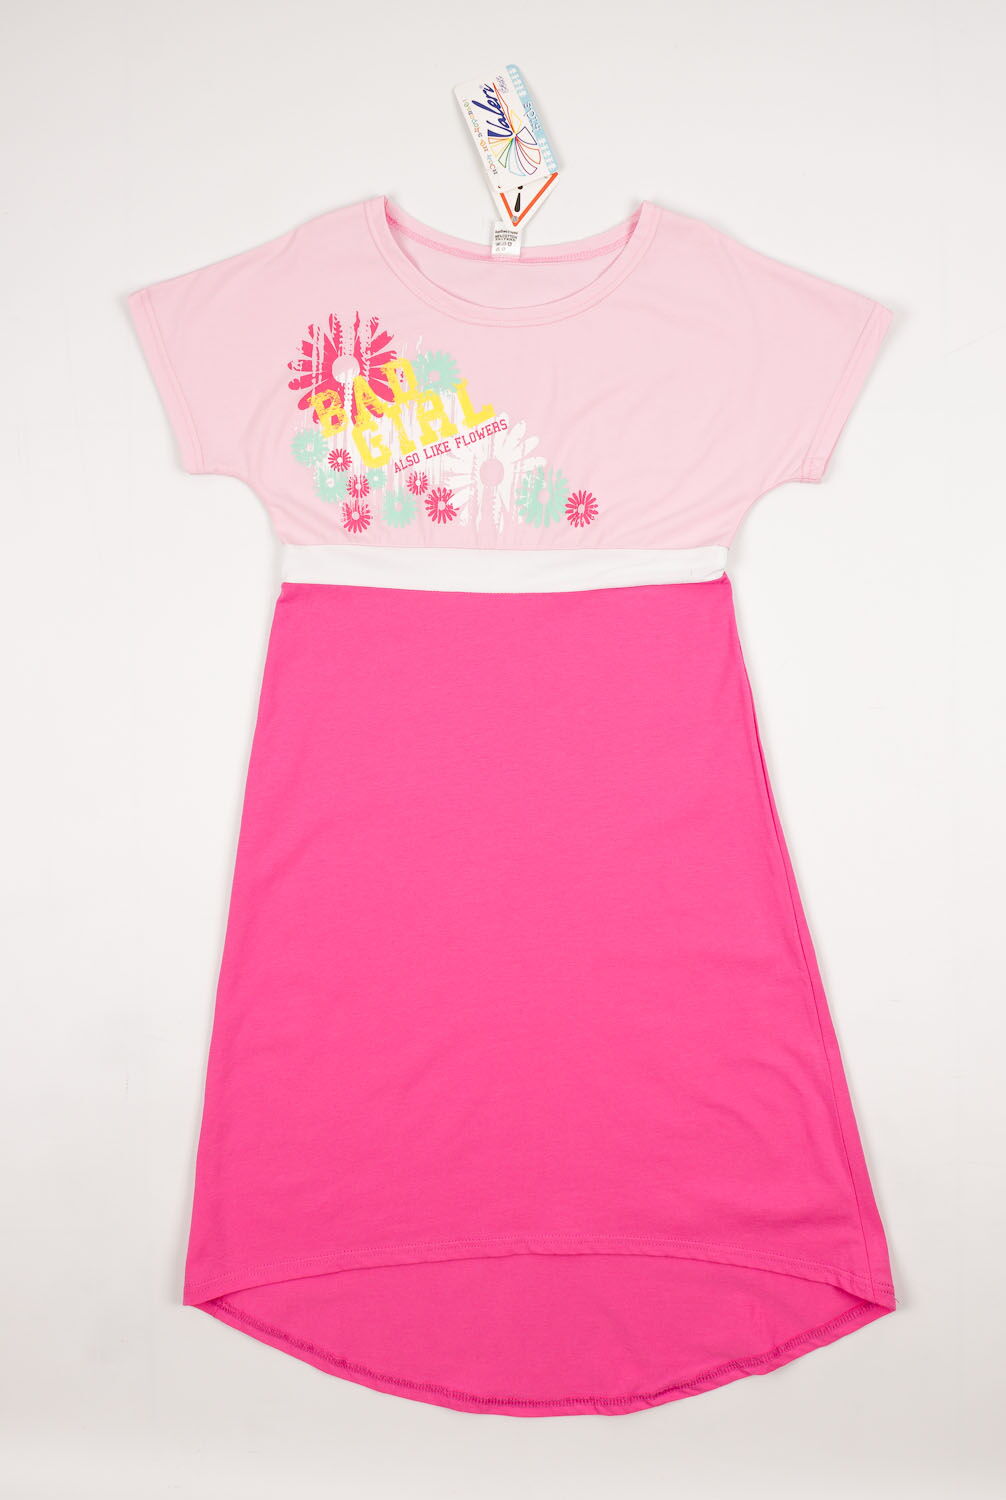 Платье для девочки Valeri tex розовое 1815-55-042 - цена